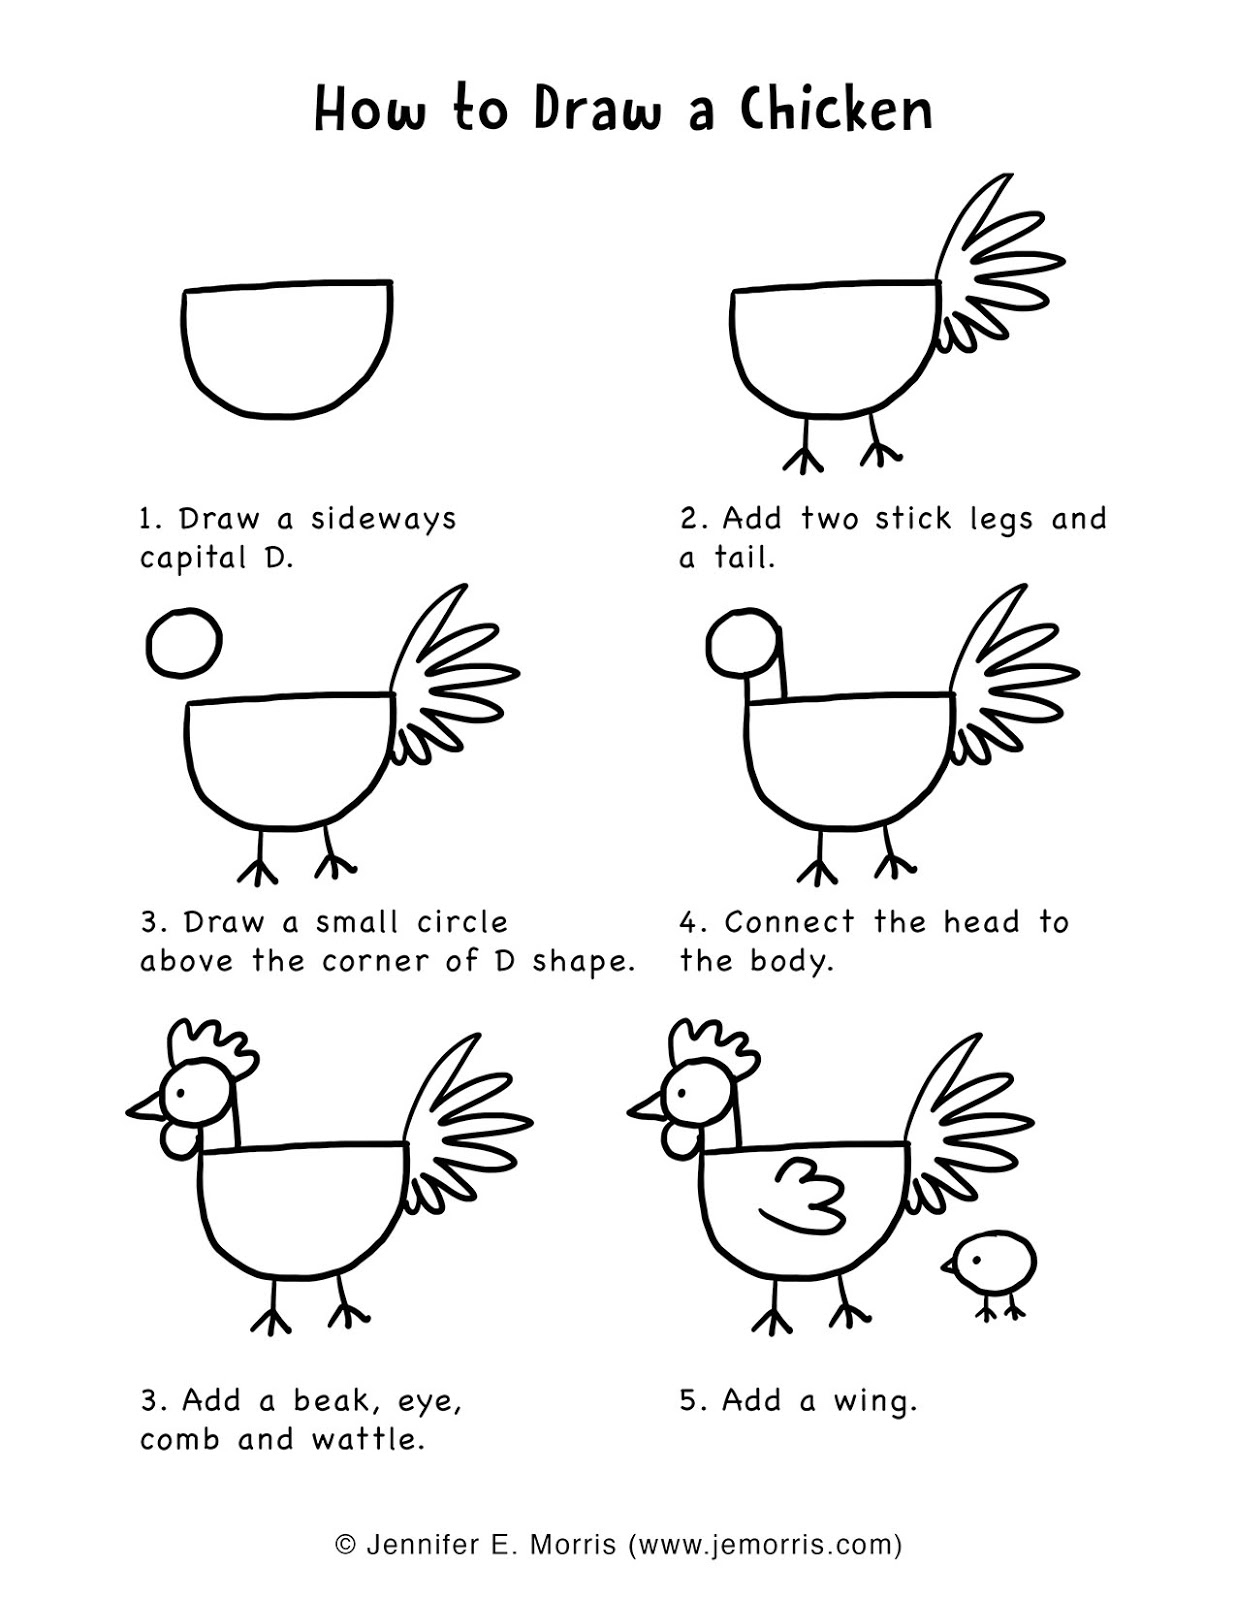 Jennifer E. Morris: How To Draw A Chicken tout Poule A Dessiner